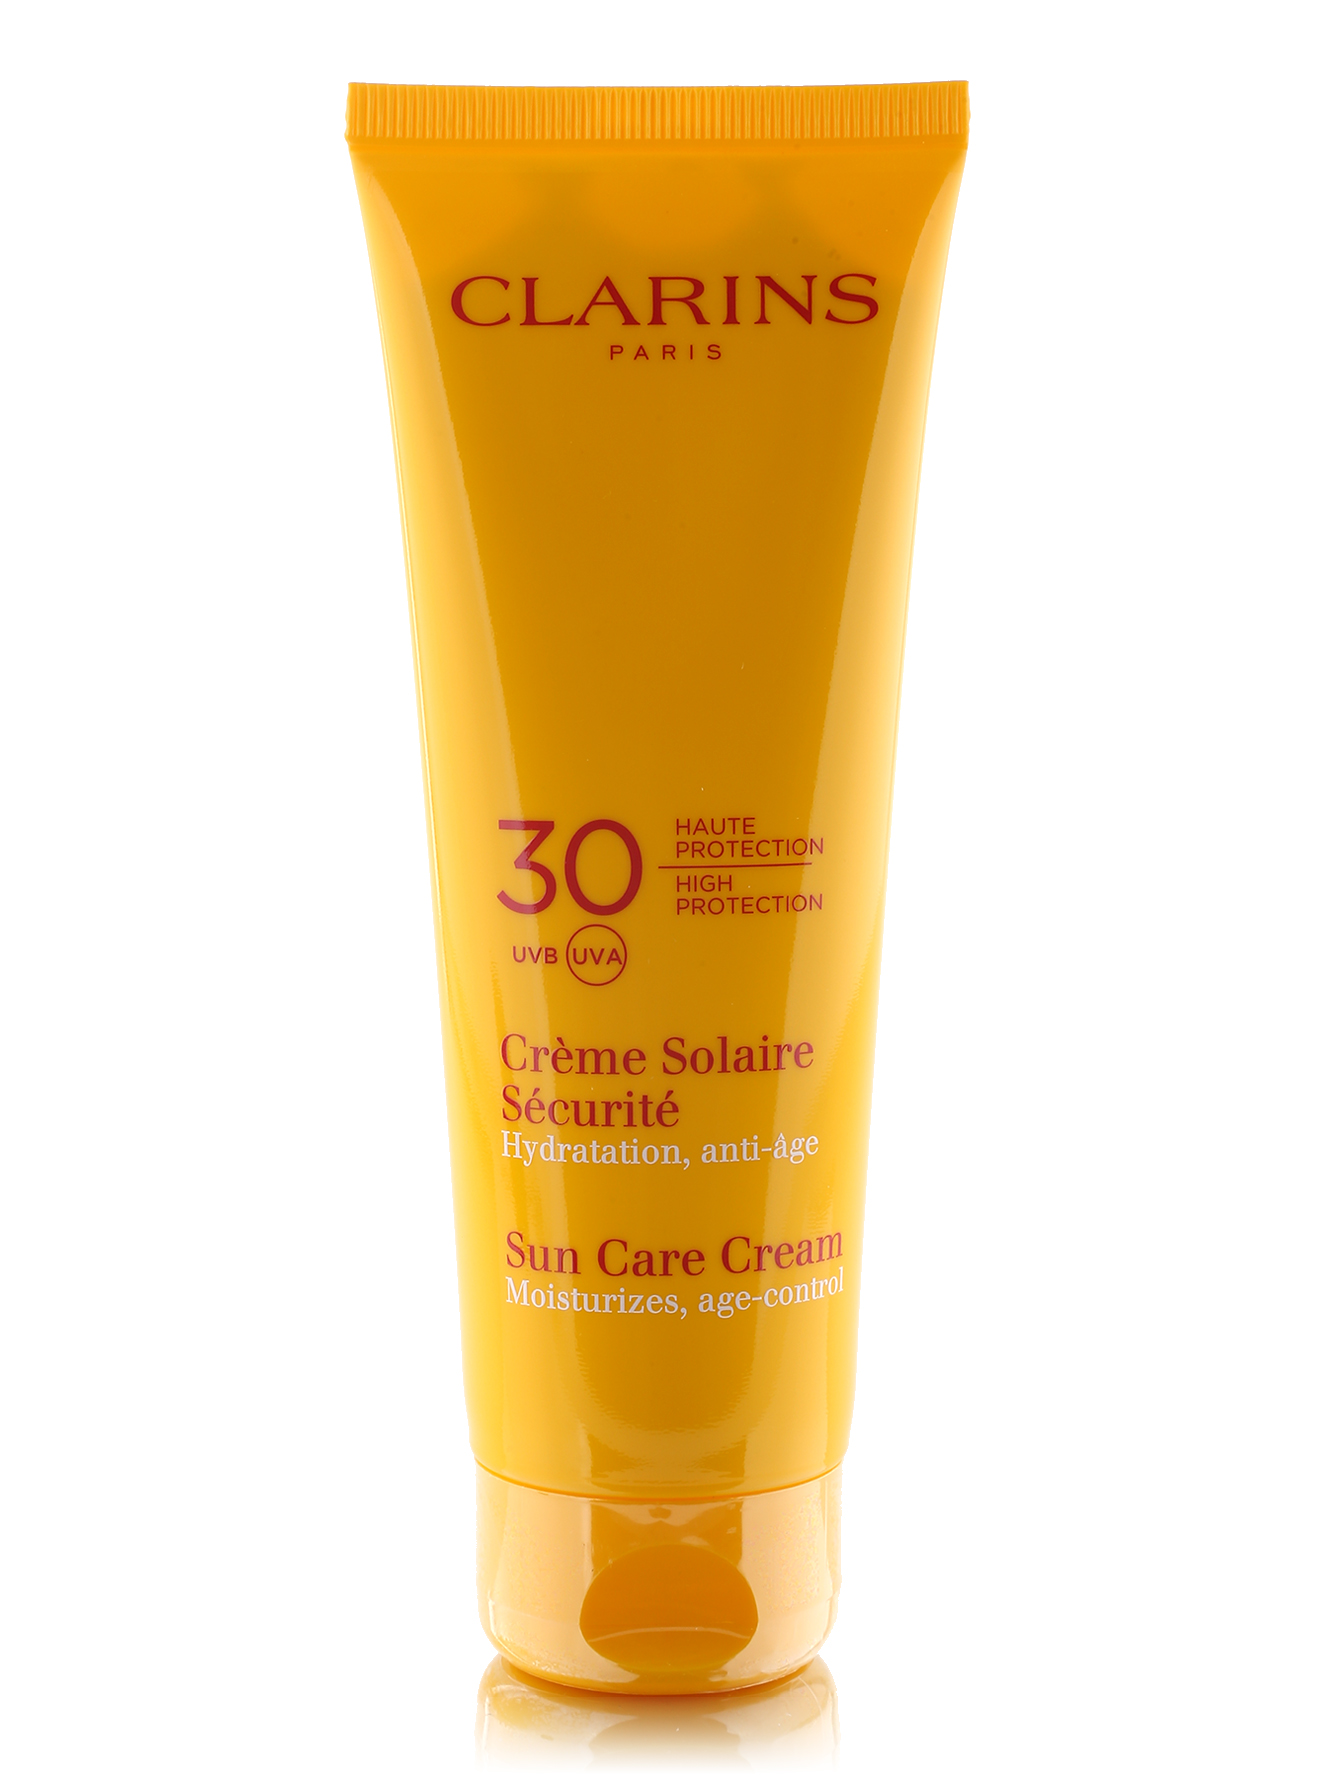  Солнцезащитный крем для чувствительной кожи - Sun Care, 125ml - Общий вид